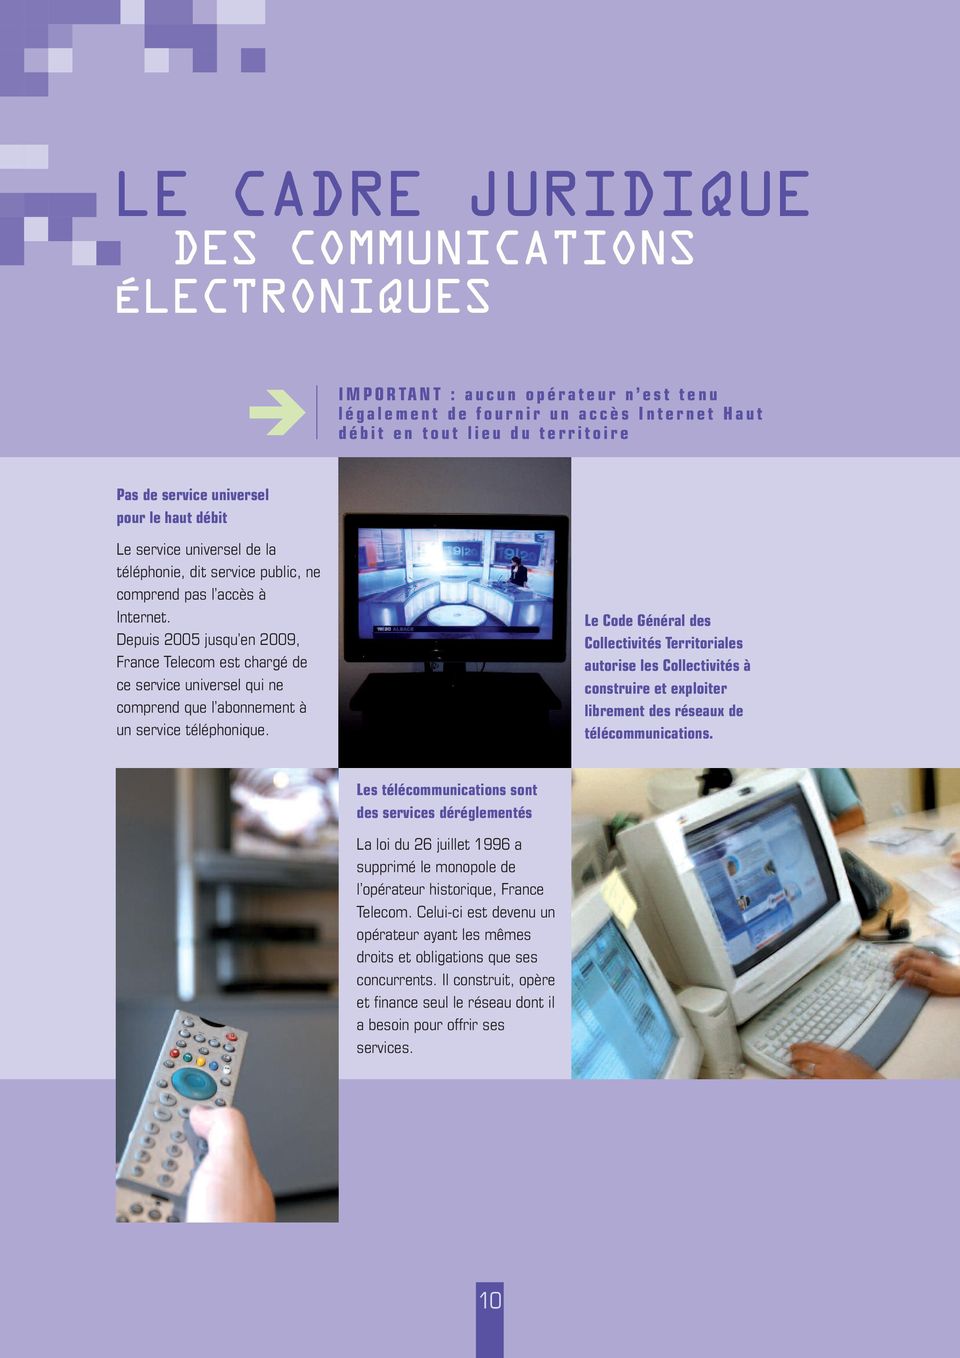 Depuis 2005 jusqu en 2009, France Telecom est chargé de ce service universel qui ne comprend que l abonnement à un service téléphonique.